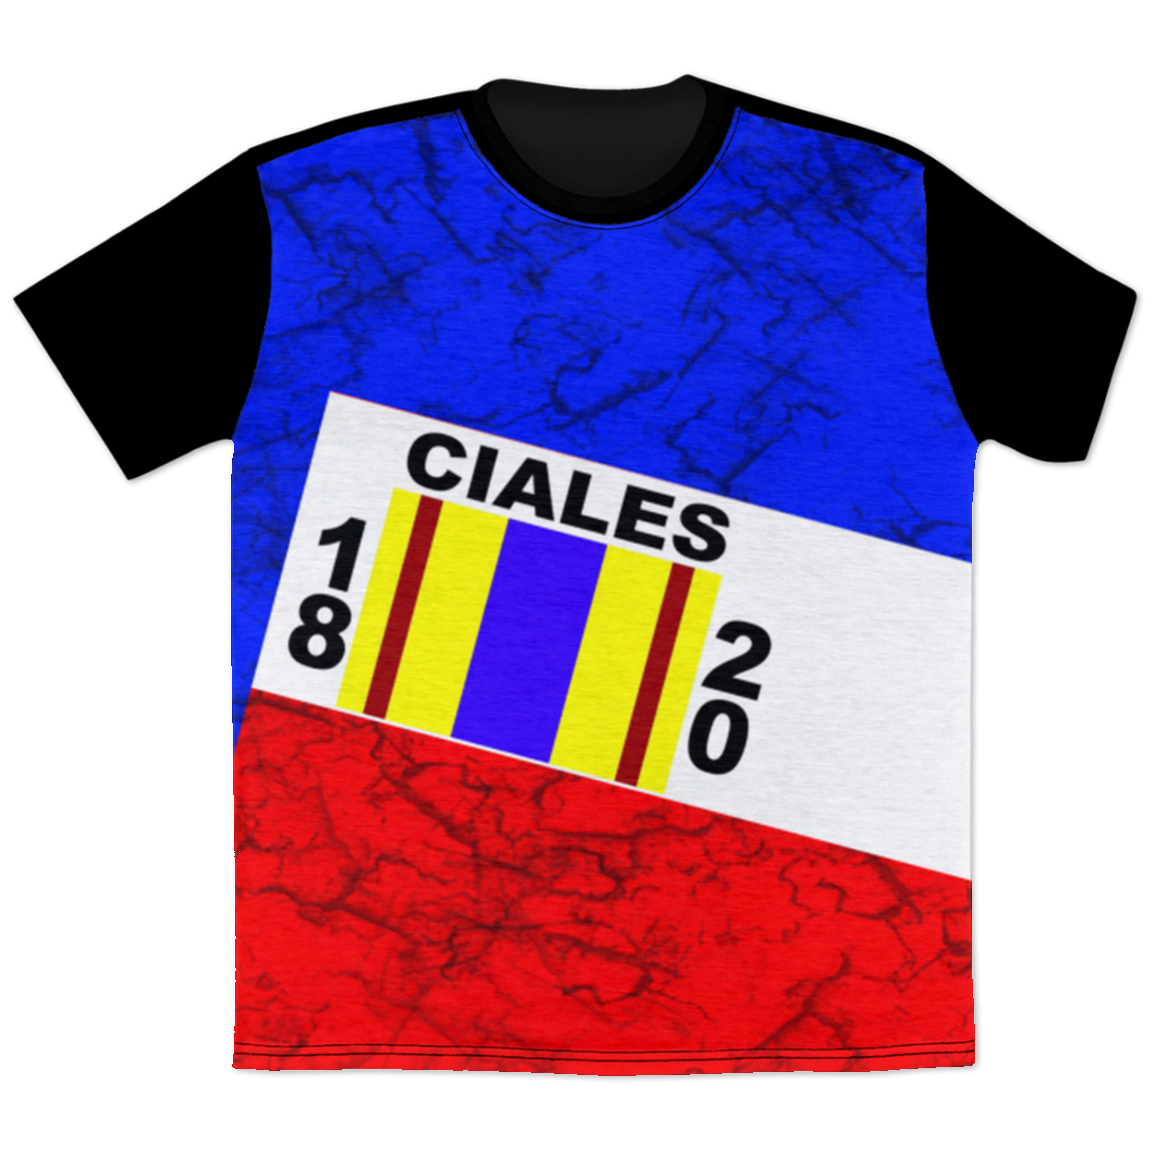 Ciales T-Shirt - Puerto Rican Pride